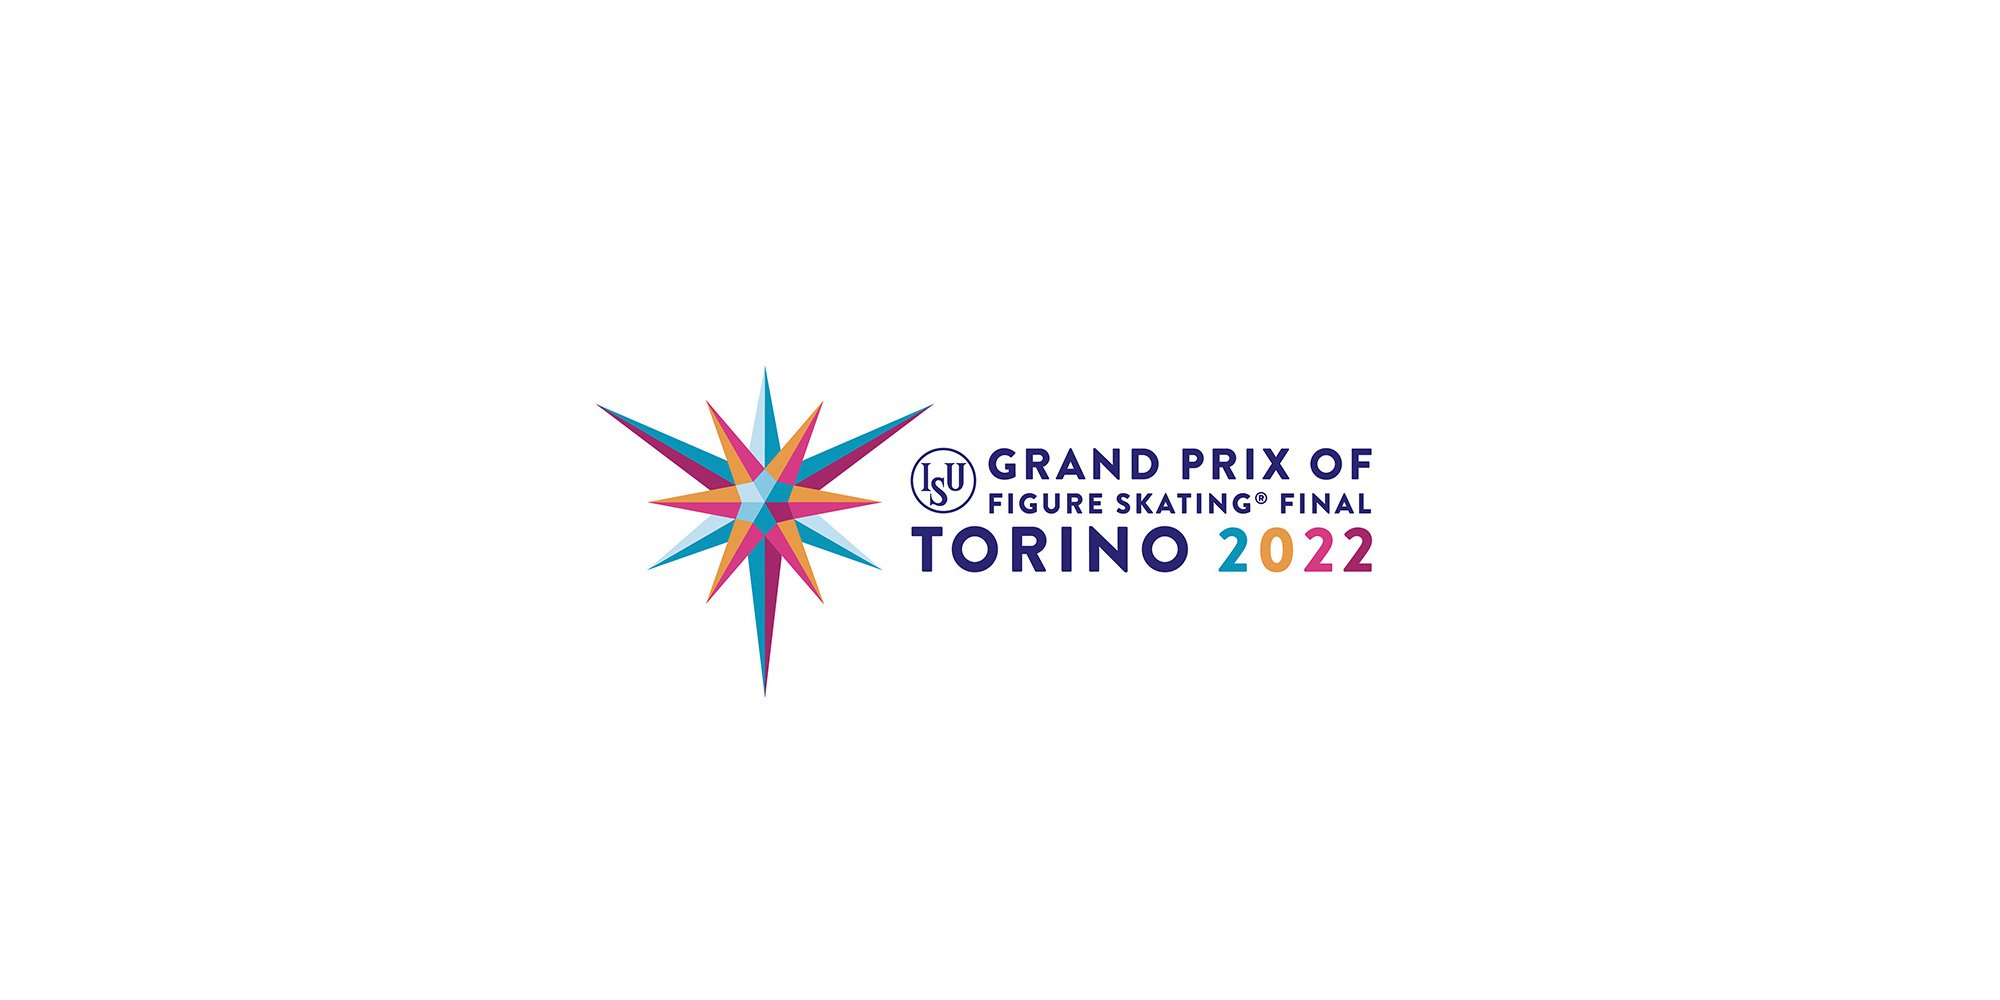 Grand Prix of Figure Skating Final 2022 — In The Loop